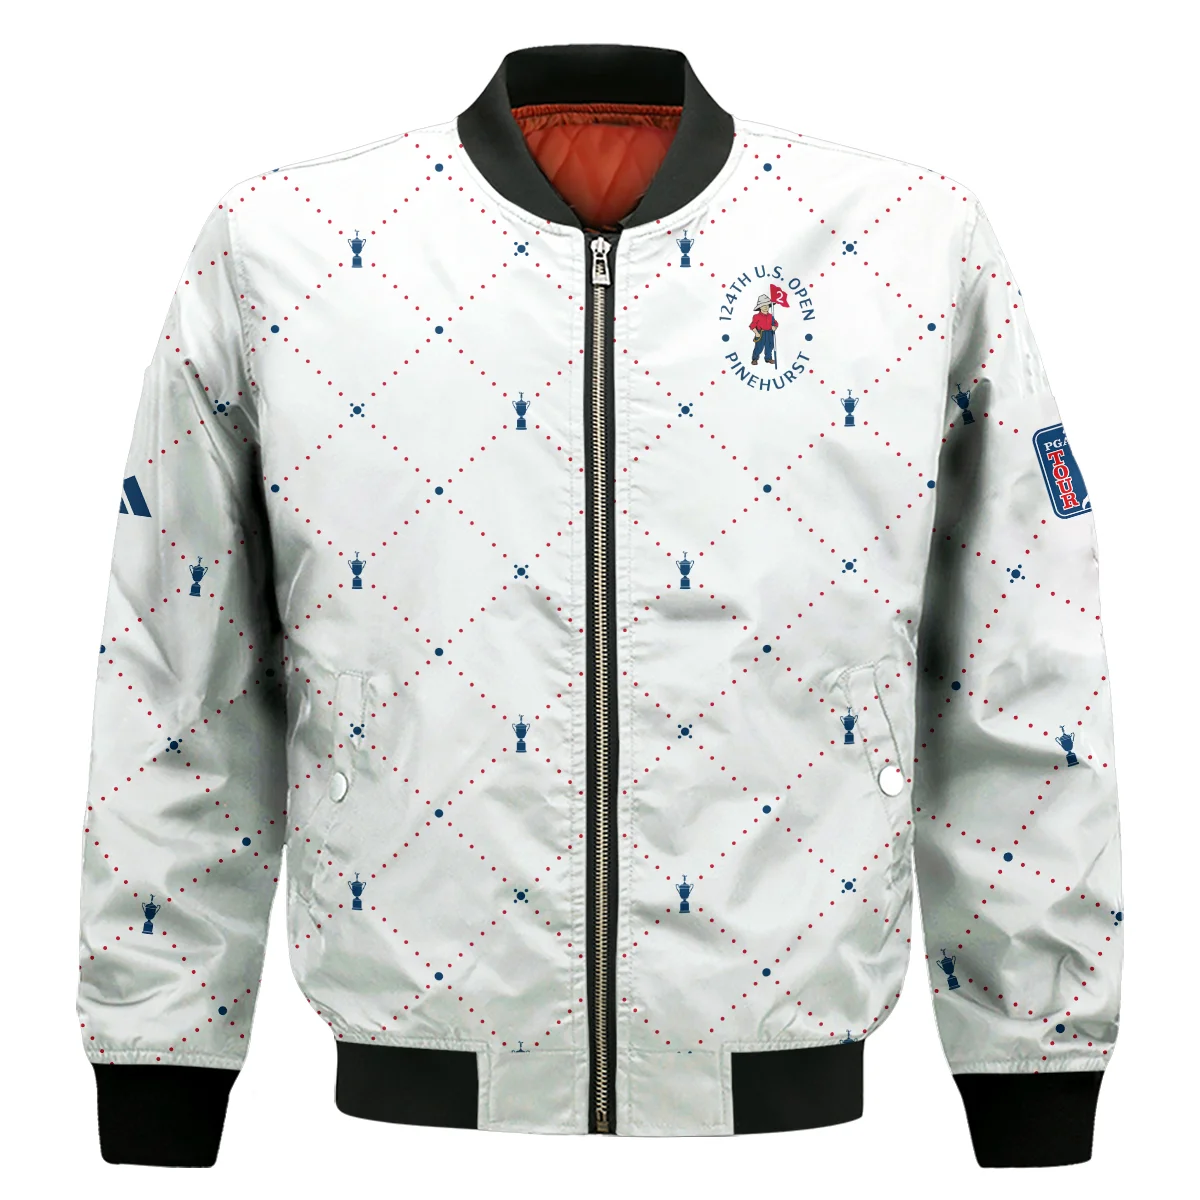 Argyle Pattern With Cup 124th U.S. Open Pinehurst Adidas Sleeveless Jacket Style Classic Sleeveless Jacket